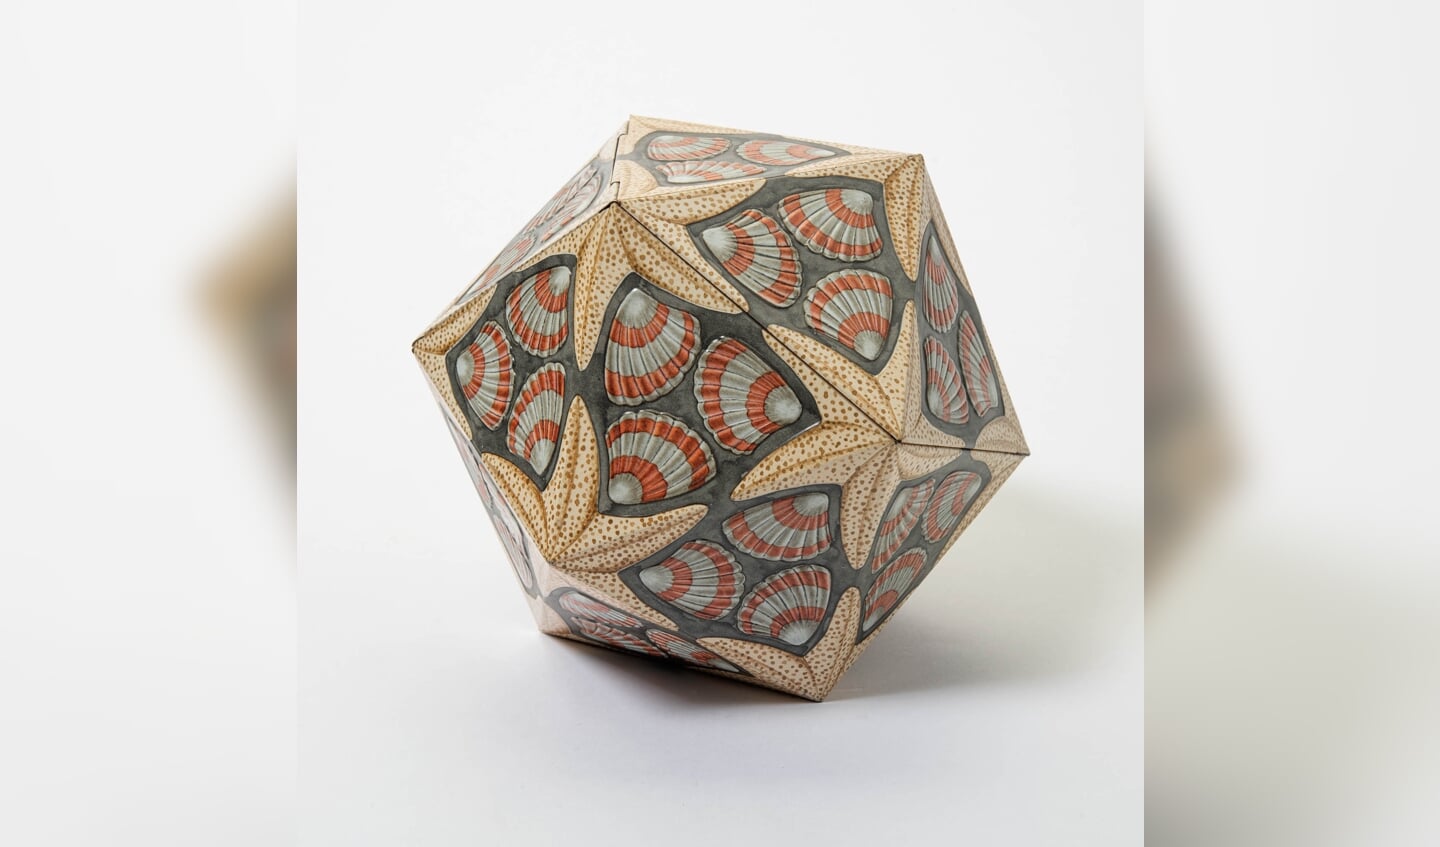 Kunstenaar Maurits Cornelis Escher (1898-1972) ontwierp in 1963 een bonbonblik met twintig vlakken, een icosaëder.